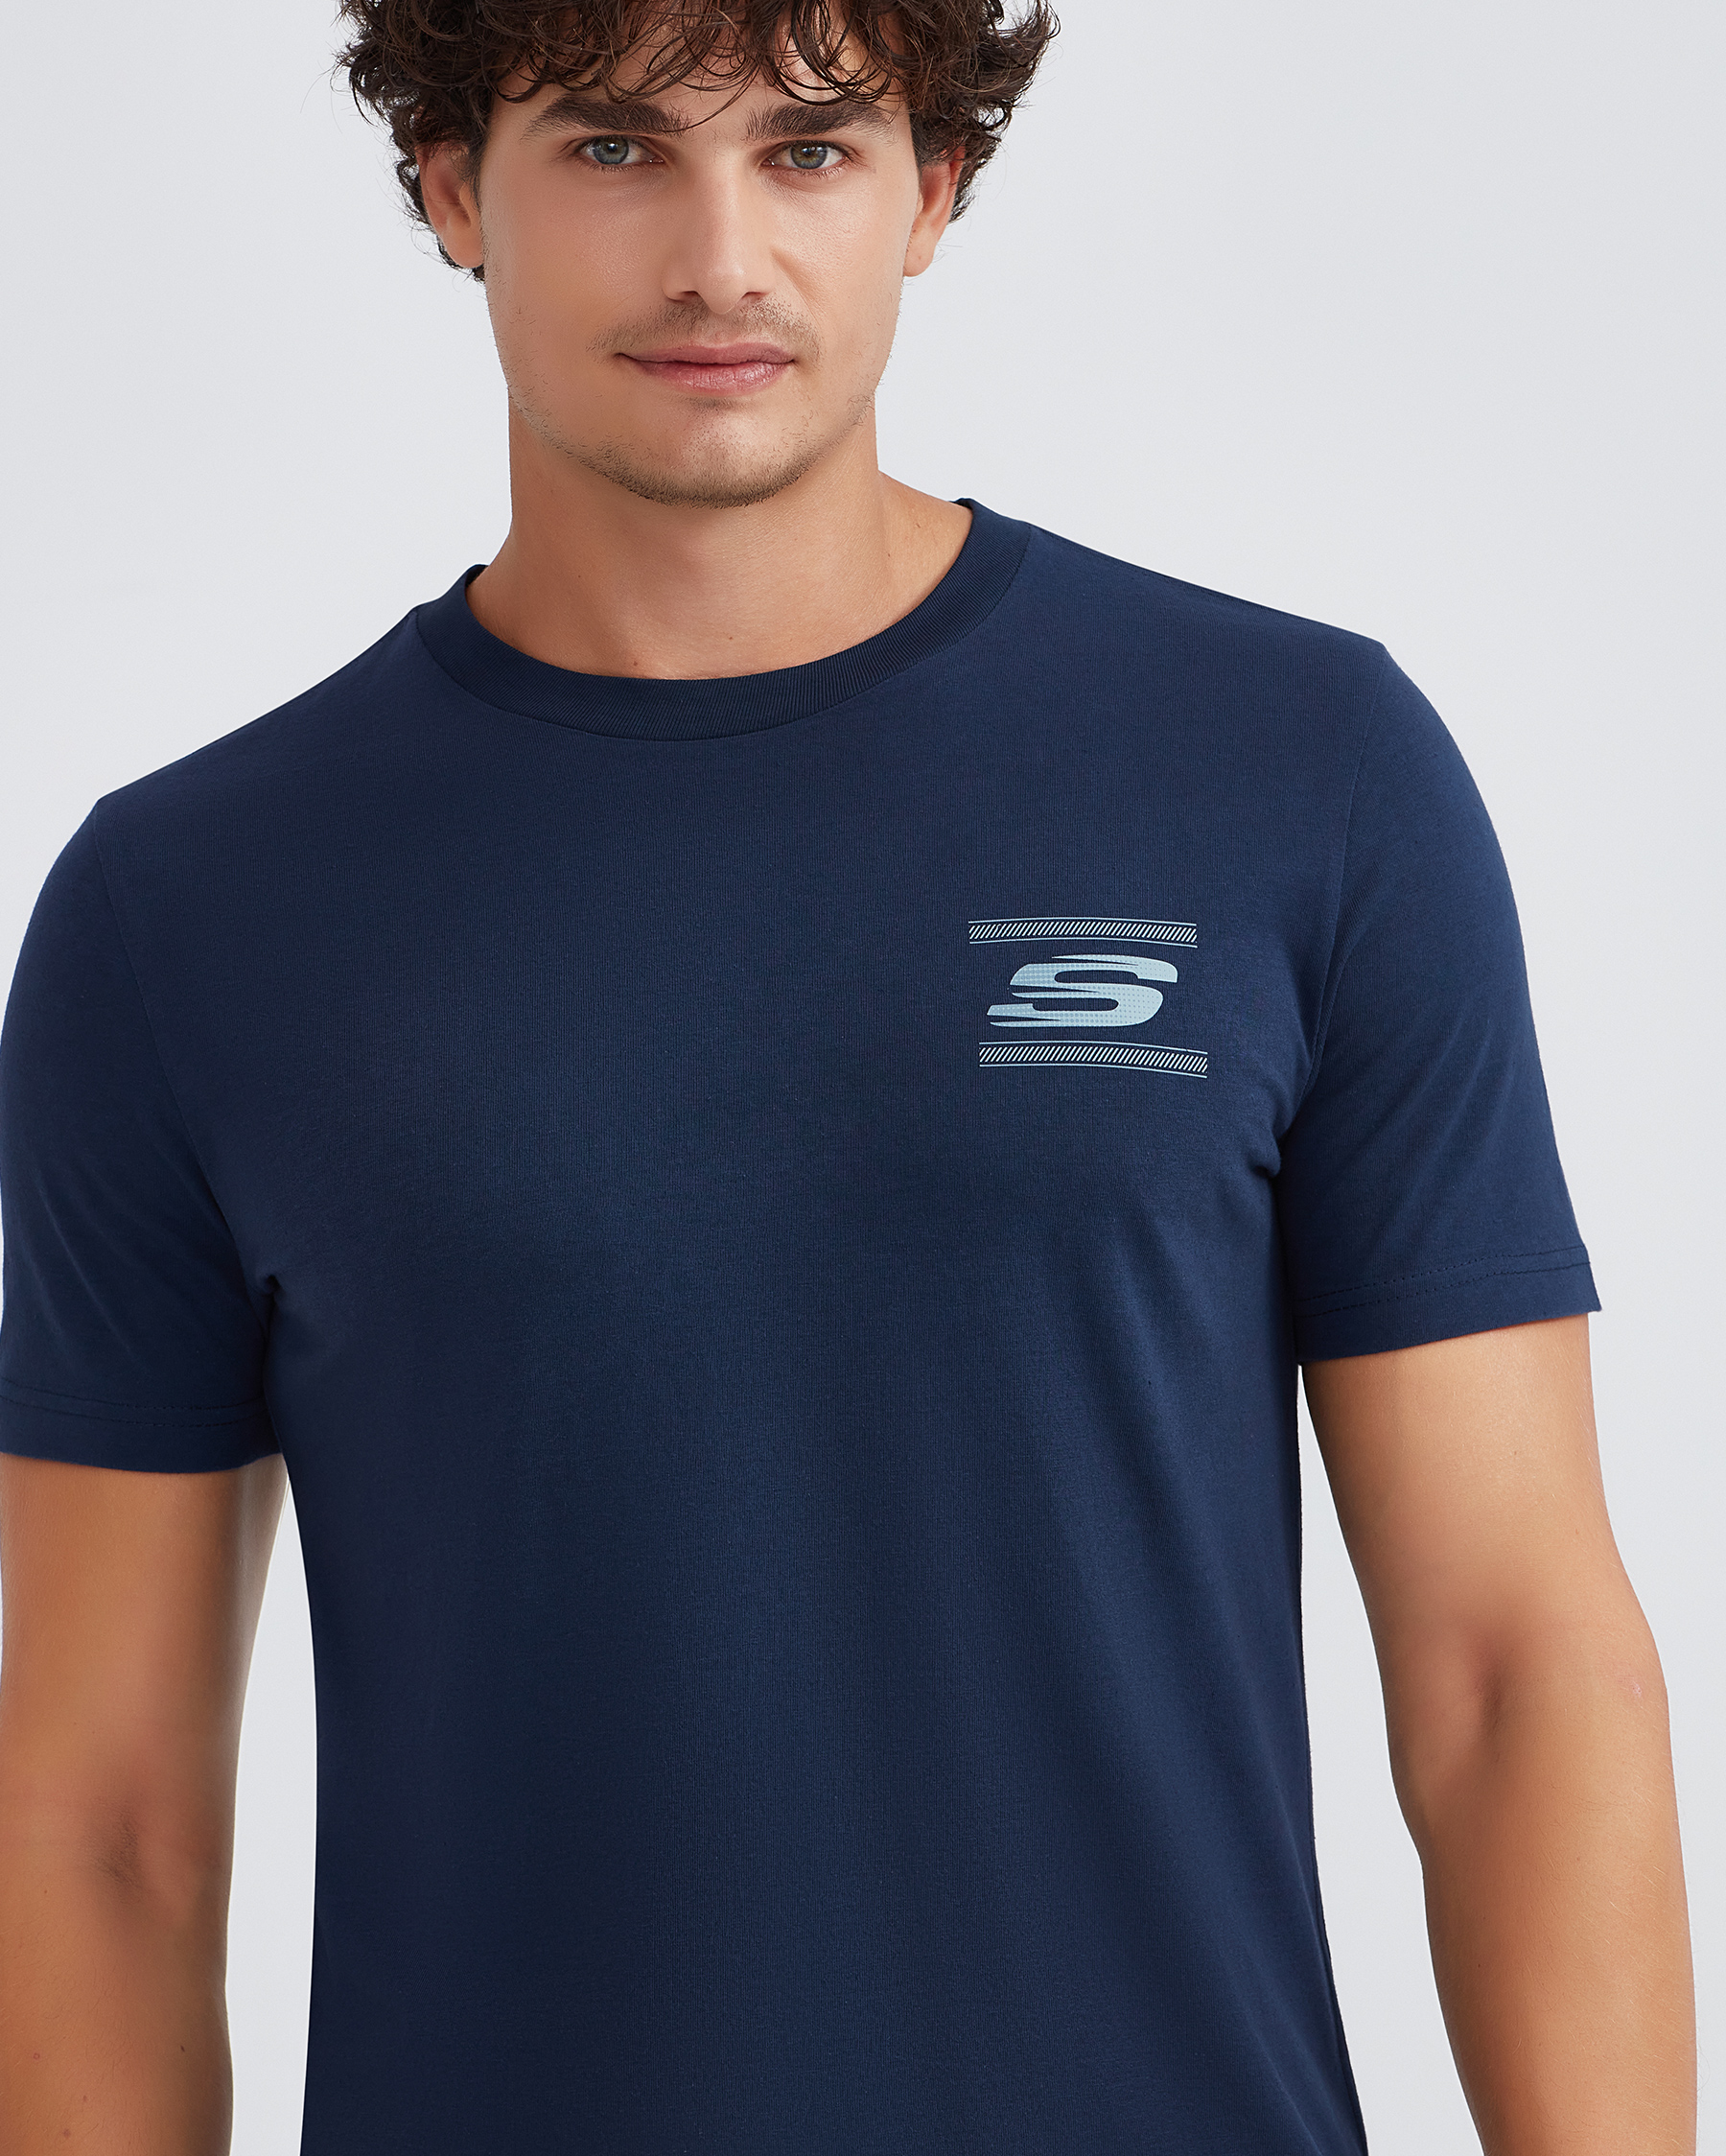 Crew Tee Graphic T-shirt Lacivert Tshirt Skechers Neck S232339-410 Erkek M